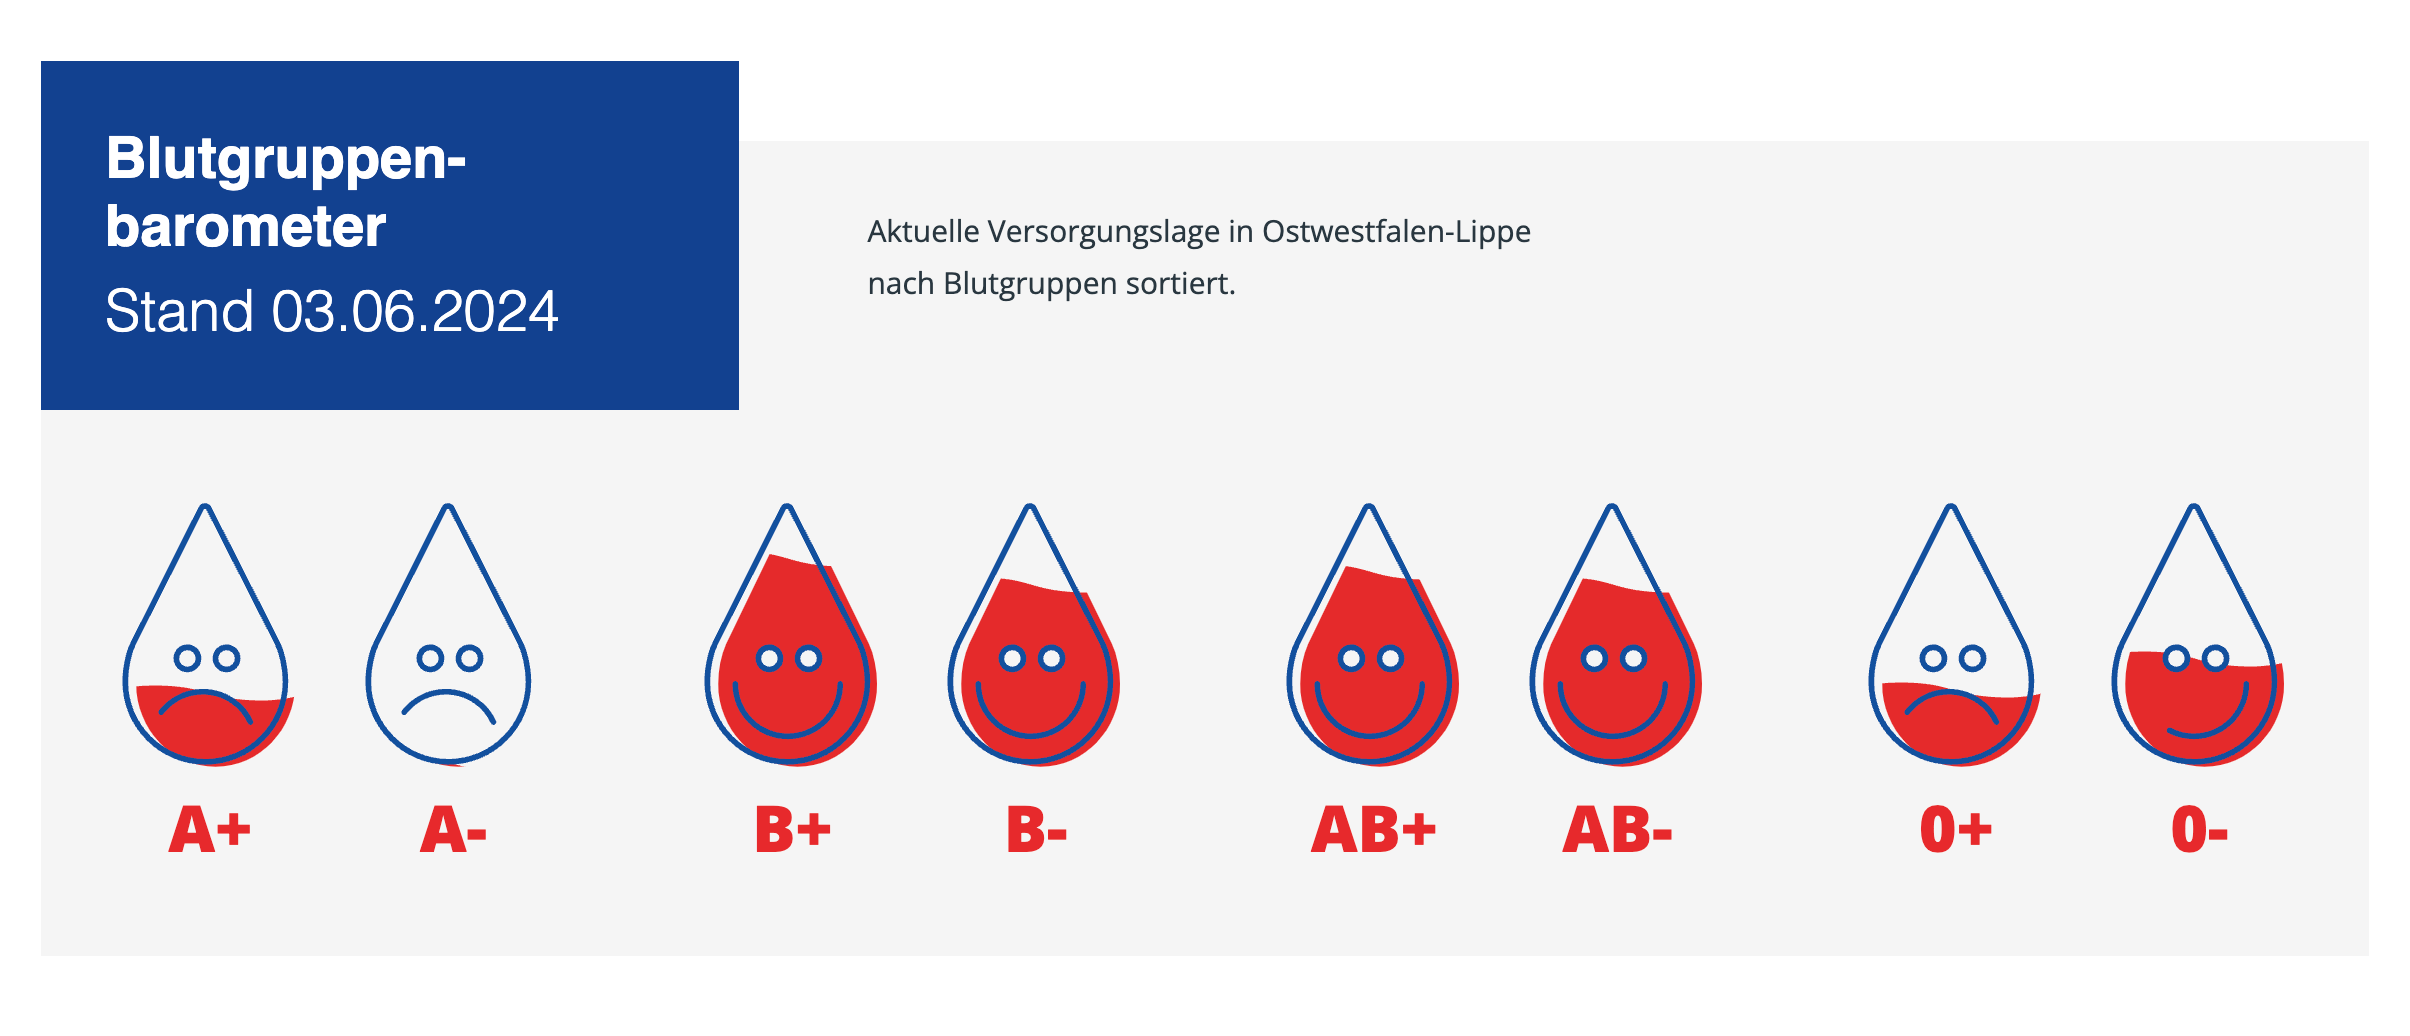 Крови часто не хватает. На сайте станции переливания крови в регионе Ostwestfalen-Lippe можно узнать, какая именно кровь нужна сейчас больше всего. На момент подготовки статьи не хватало второй отрицательной группы крови (A-)